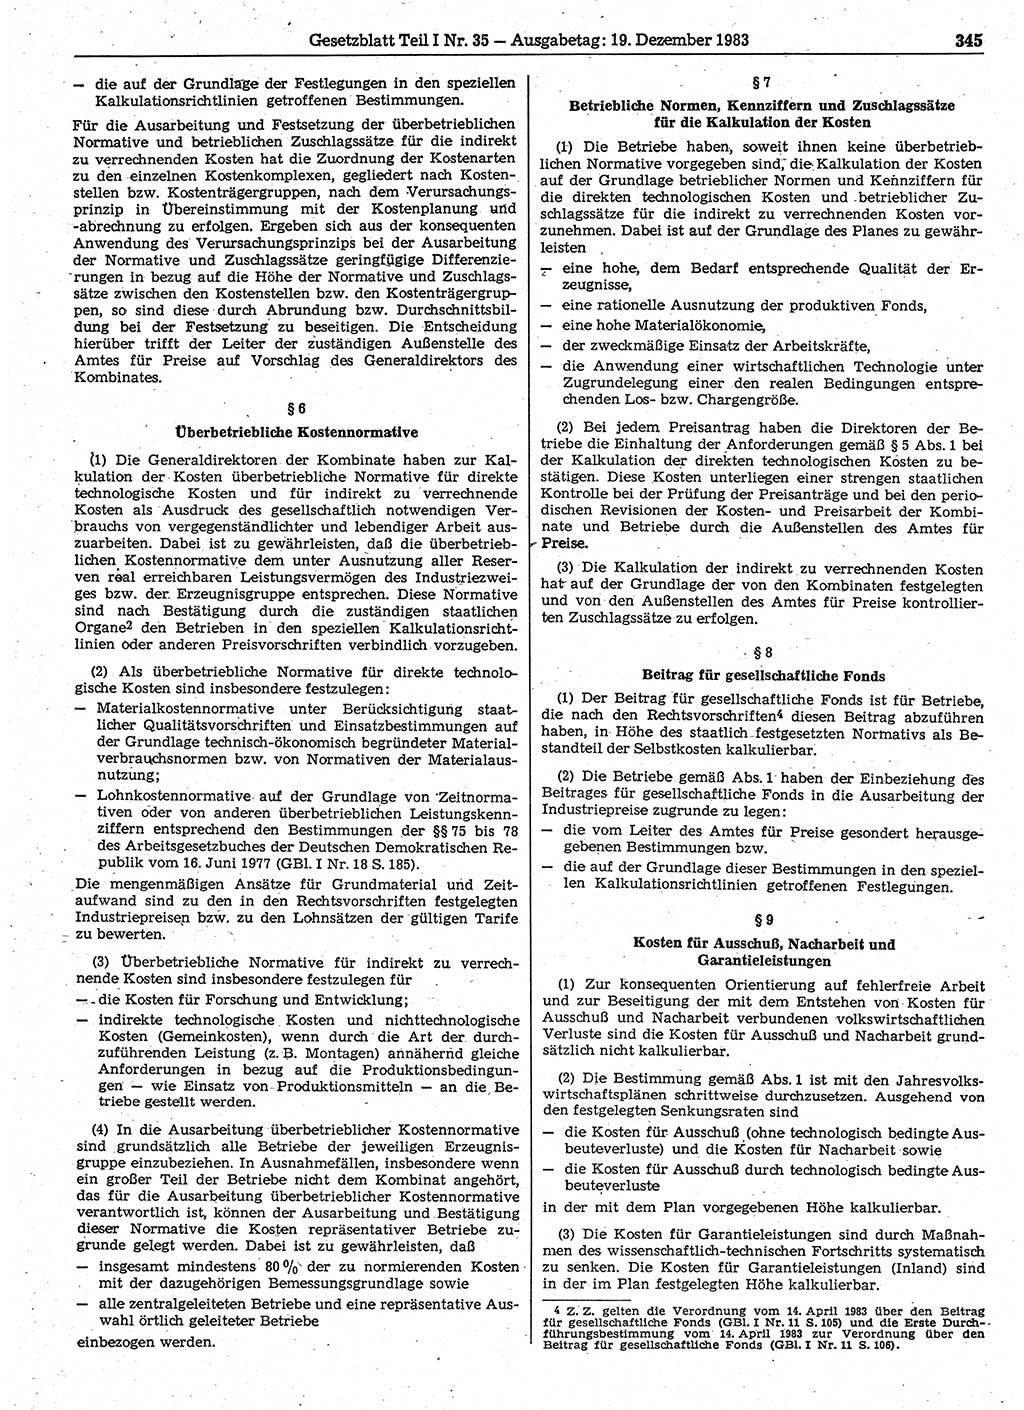 Gesetzblatt (GBl.) der Deutschen Demokratischen Republik (DDR) Teil Ⅰ 1983, Seite 345 (GBl. DDR Ⅰ 1983, S. 345)